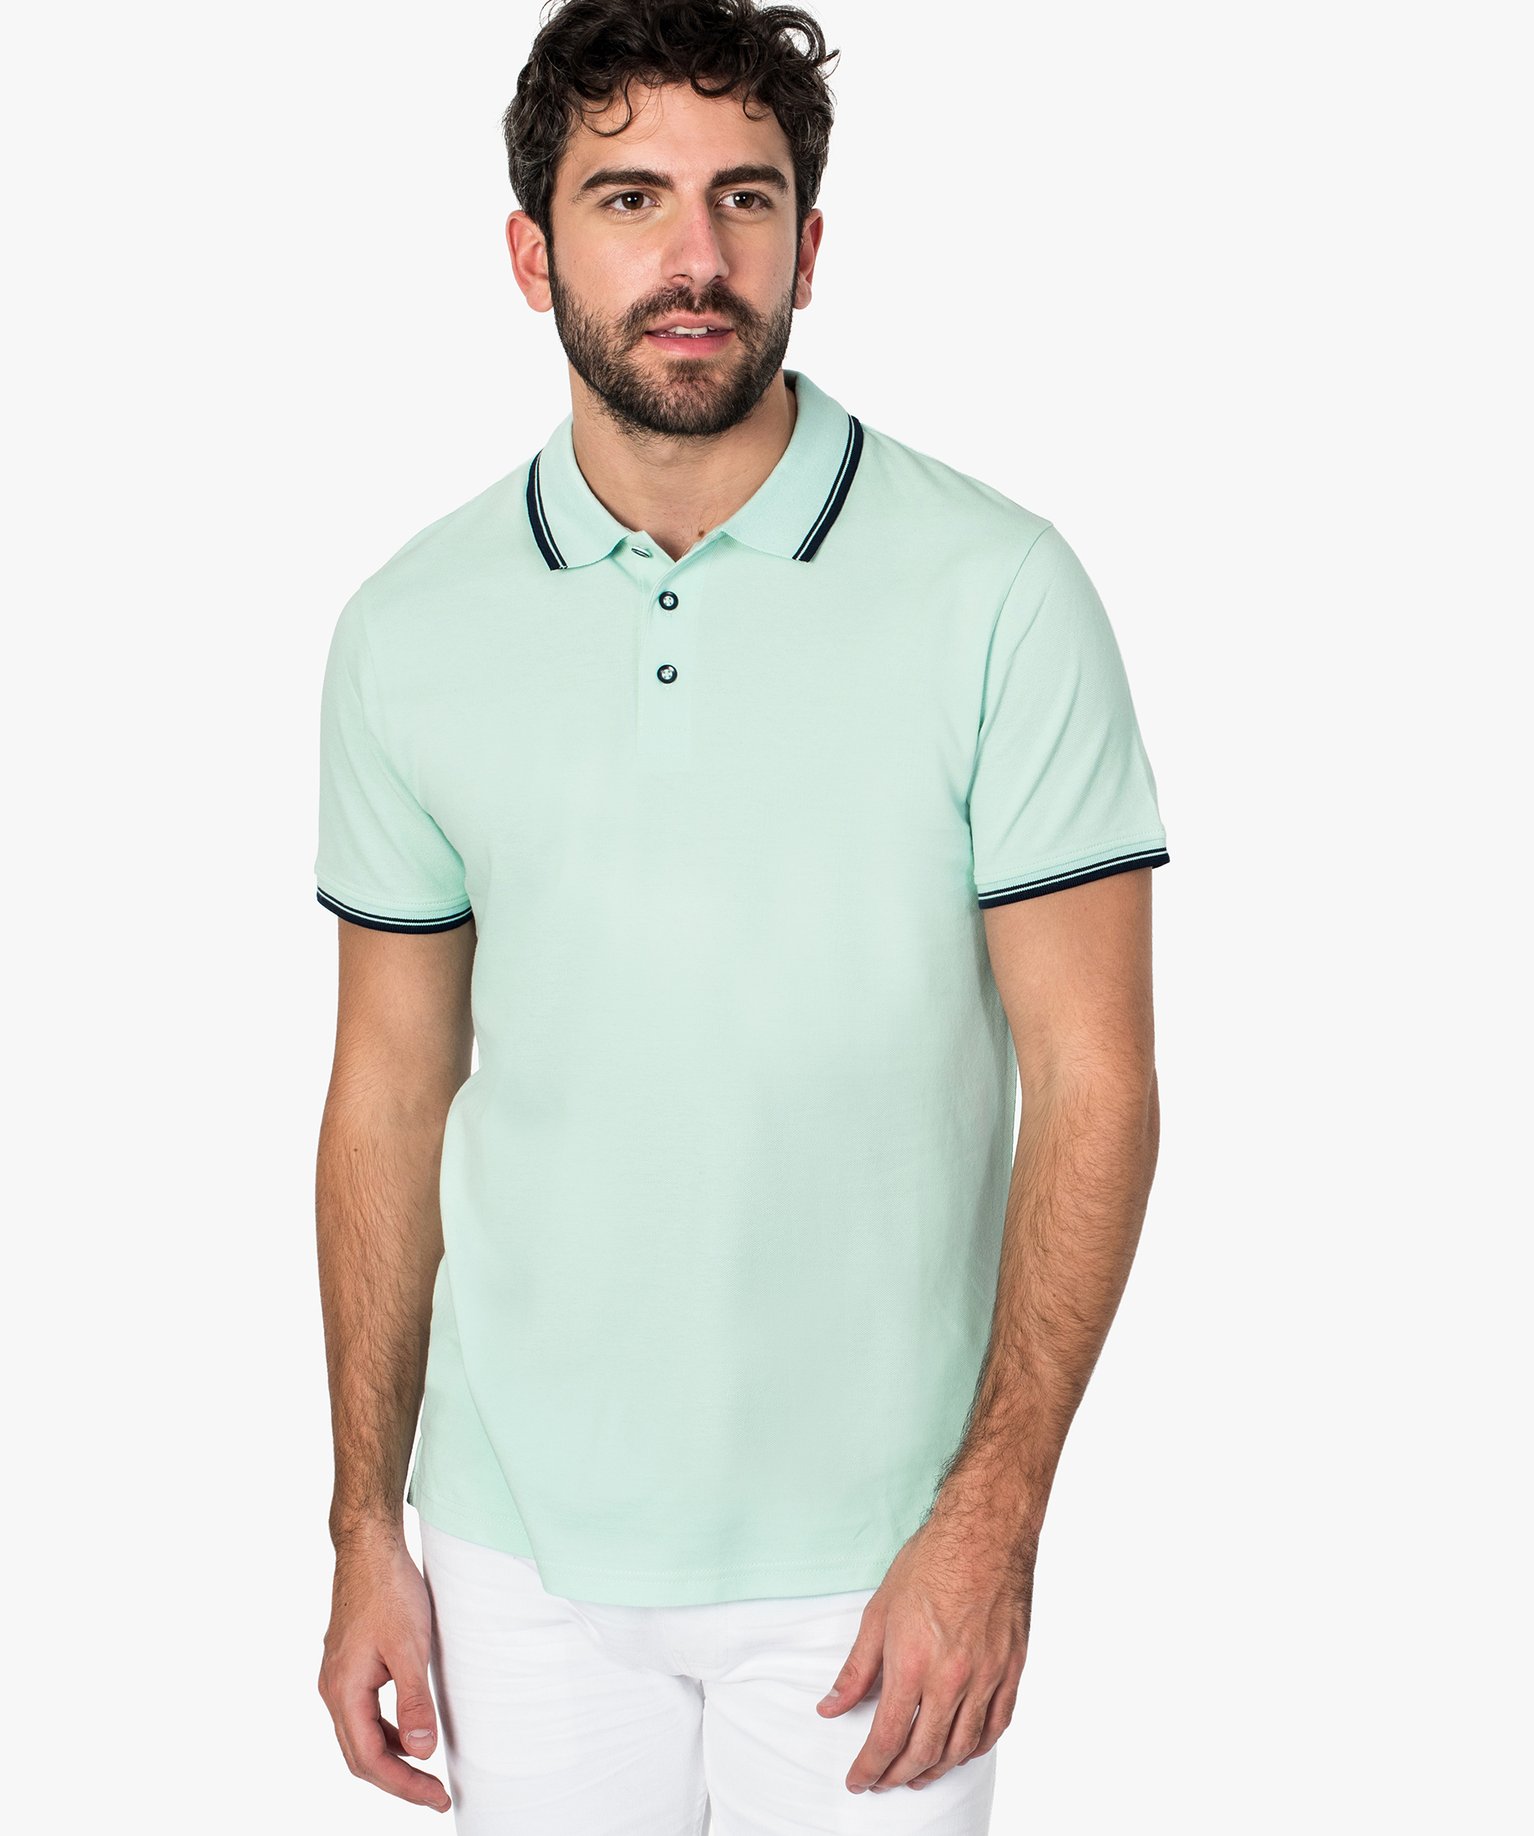 Polo homme à manches courtes en maille piquée Gemo Homme Vêtements Tops & T-shirts T-shirts Manches courtes 